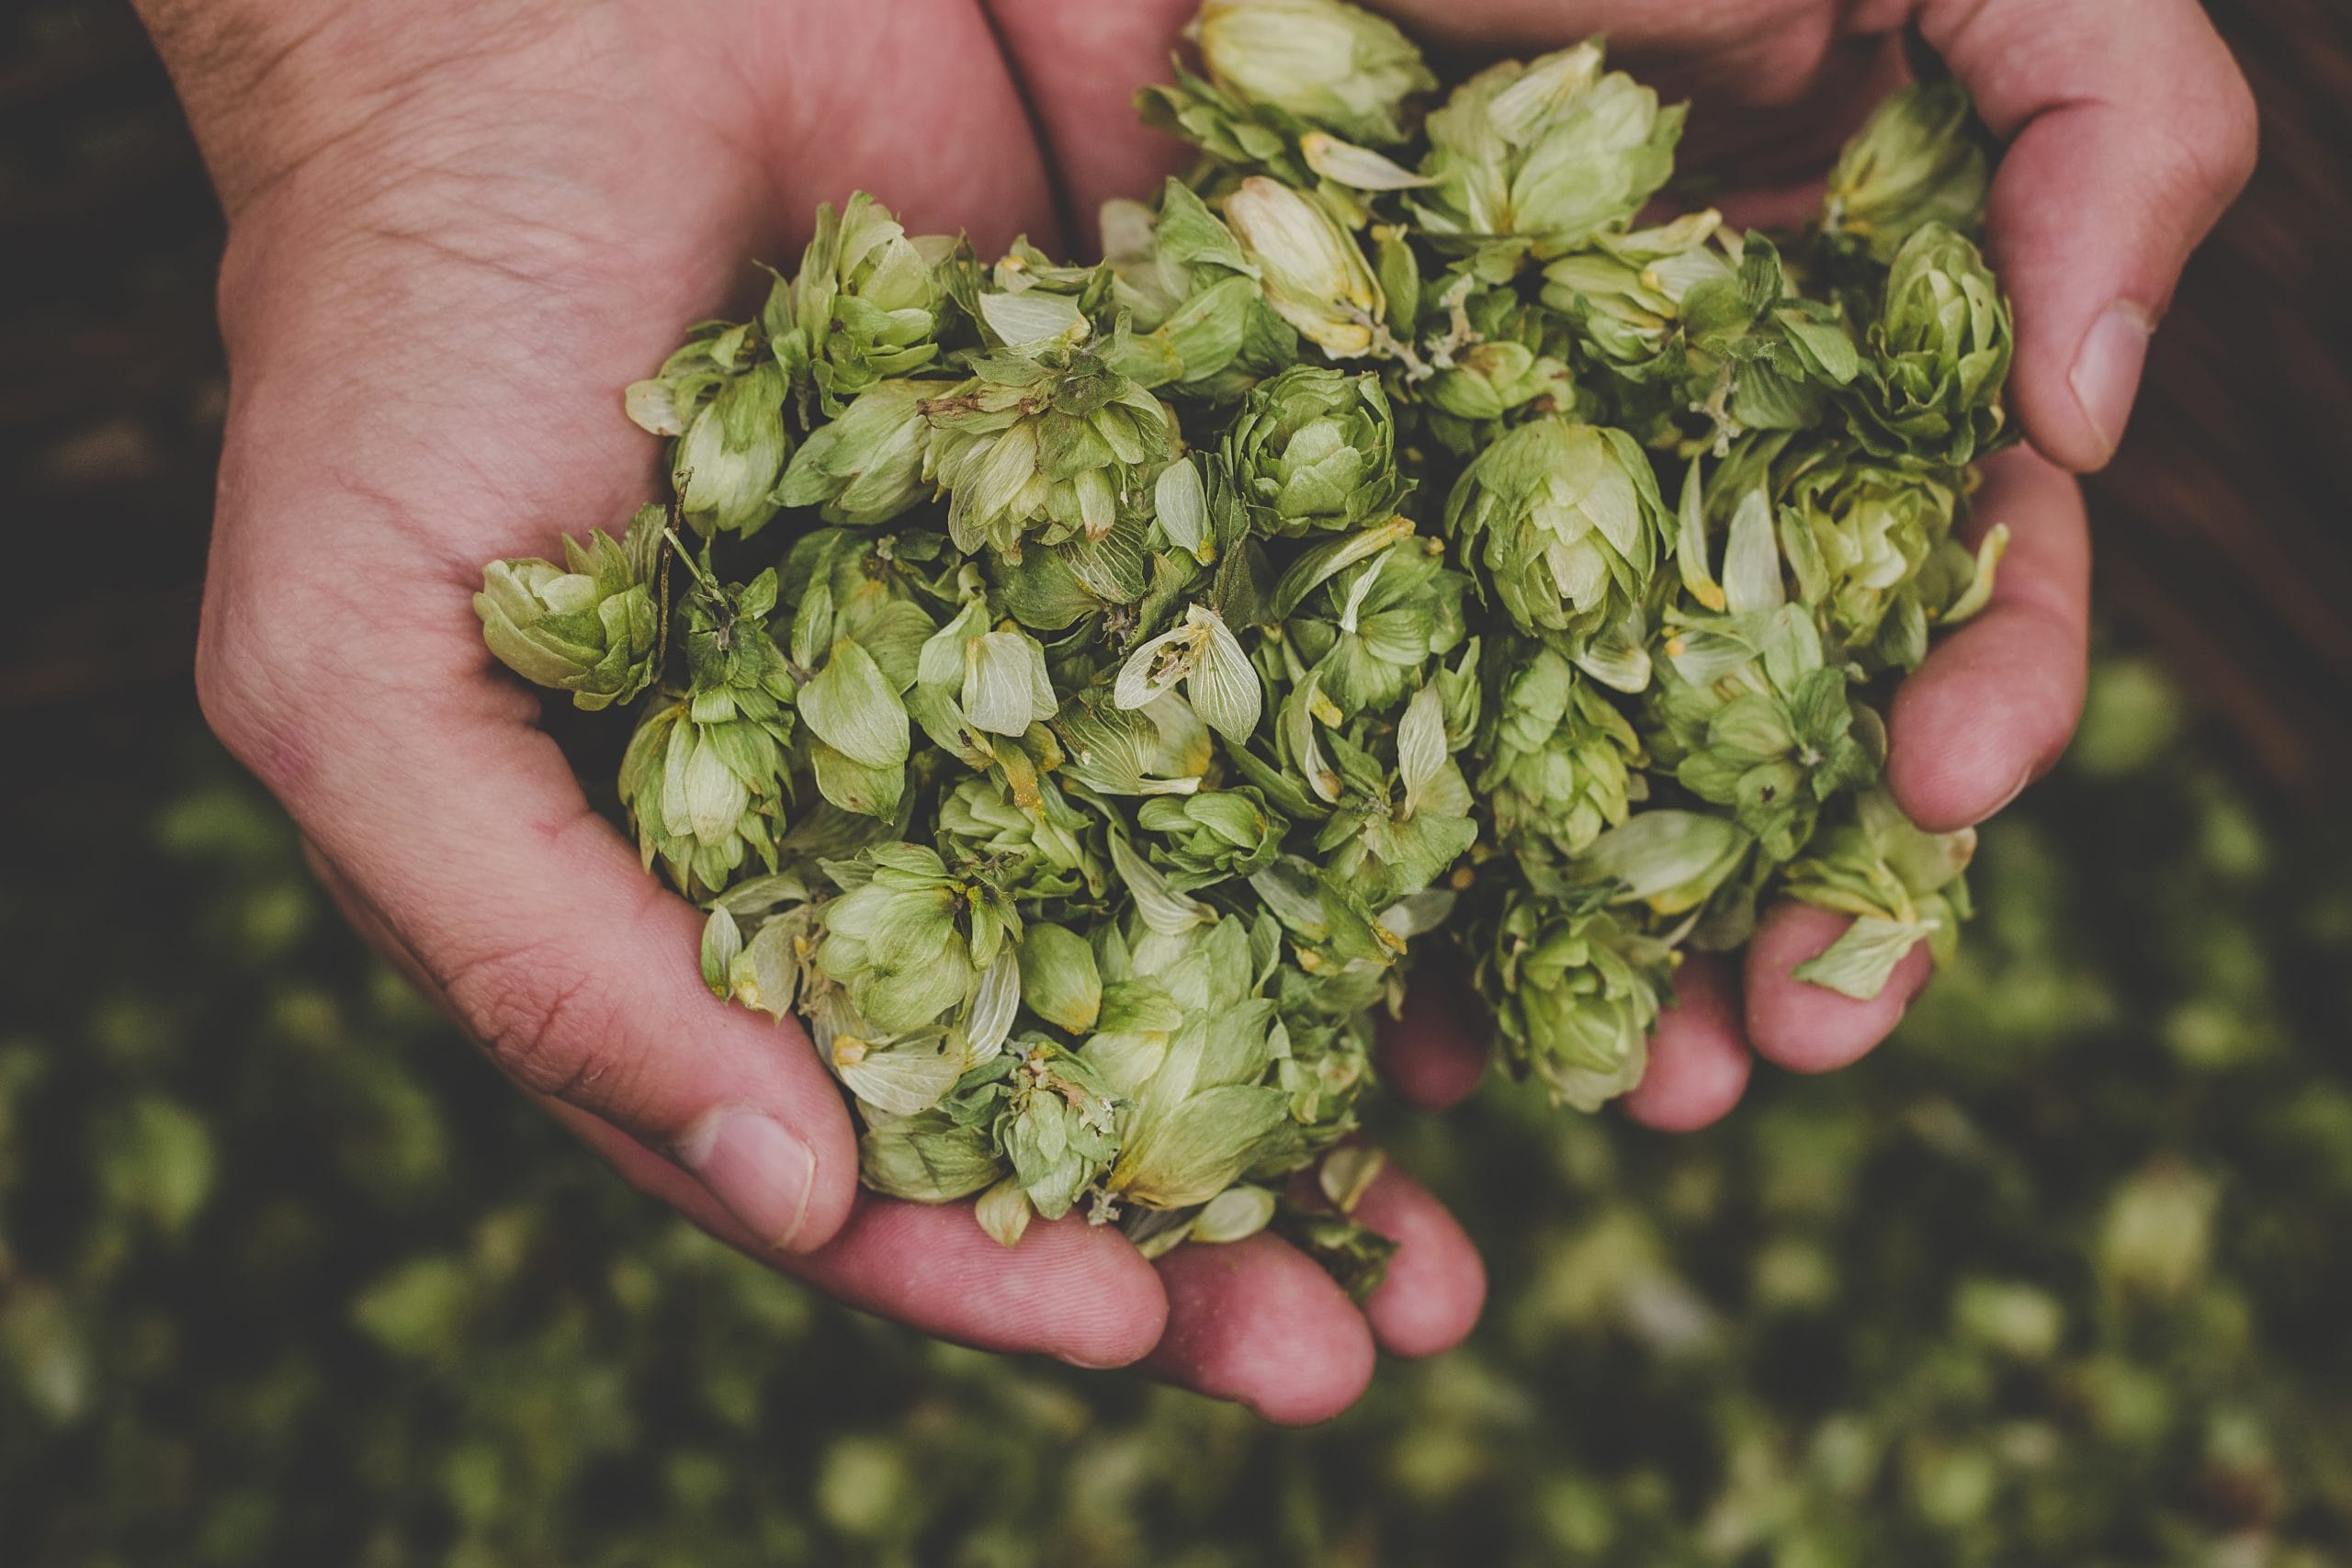 Terpenes: A handful of hops